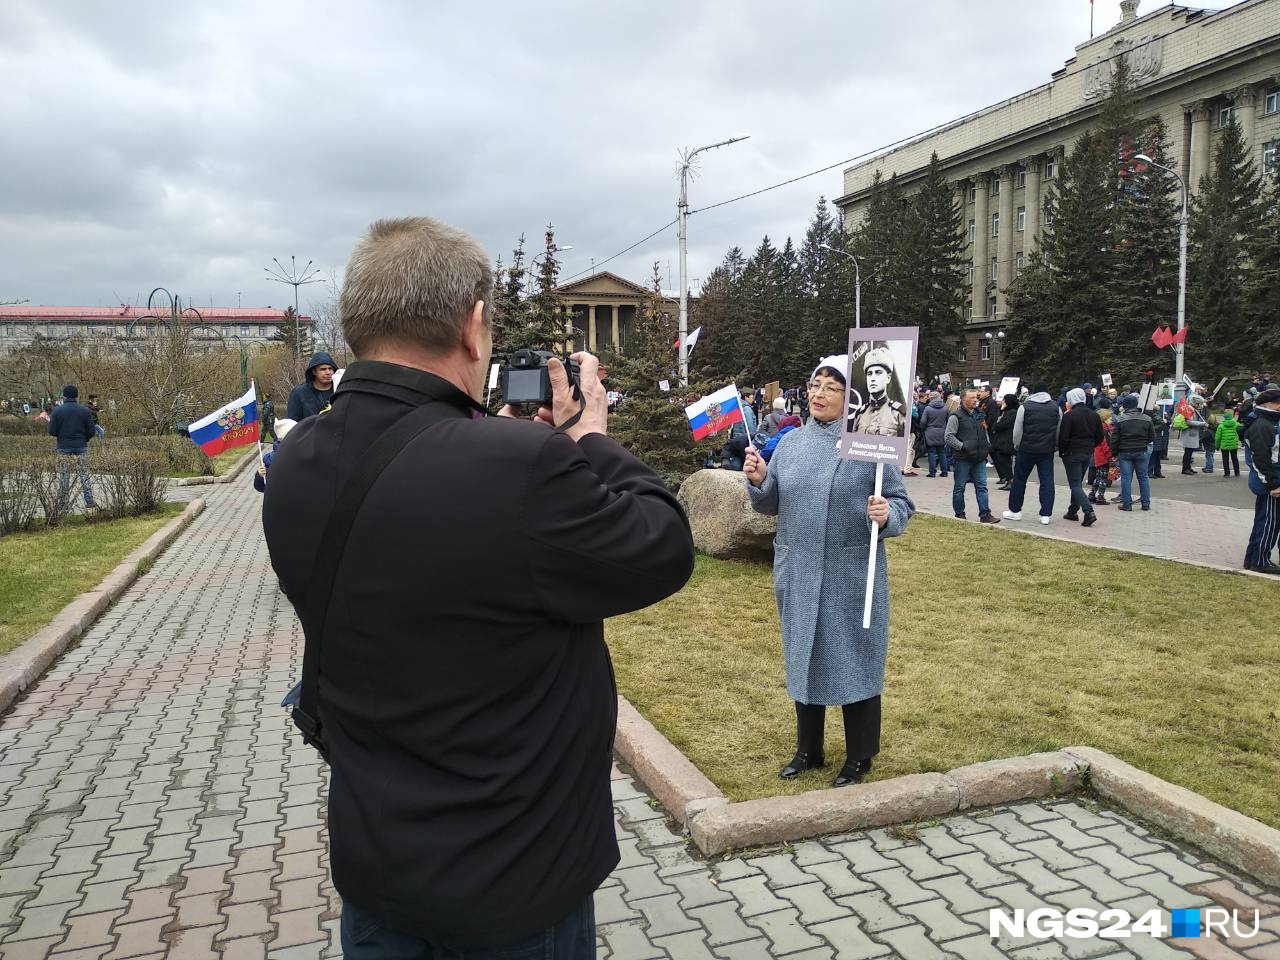 Муж фотографируем Эмму  Вильевну за несколько минут до старта шествия 